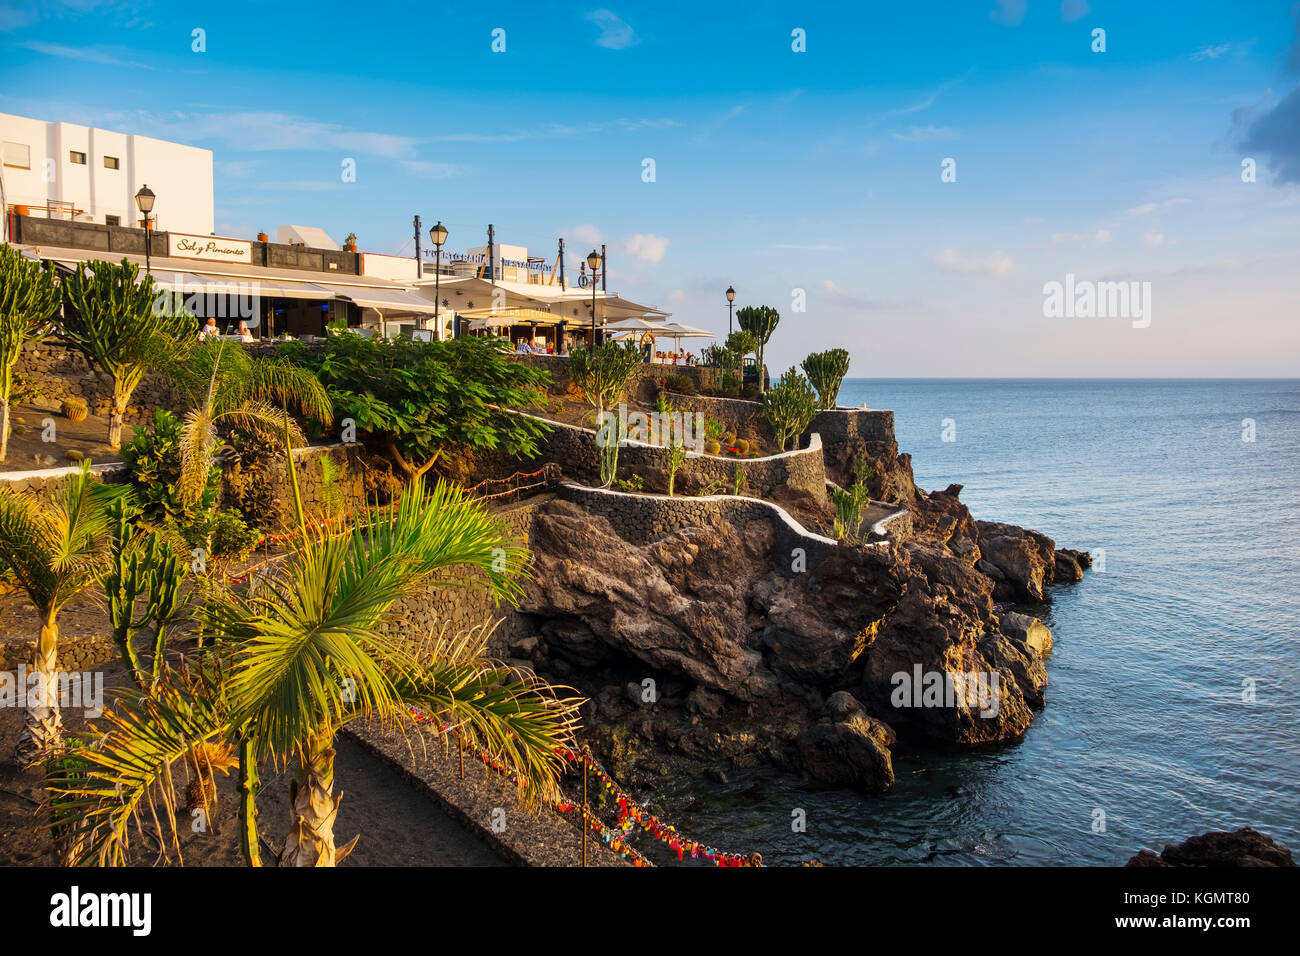 Restaurant bei Sonnenuntergang, Fischerhafen, Puerto del Carmen. Lanzarote Island. Kanarische Inseln Spanien. Europa Stockfoto